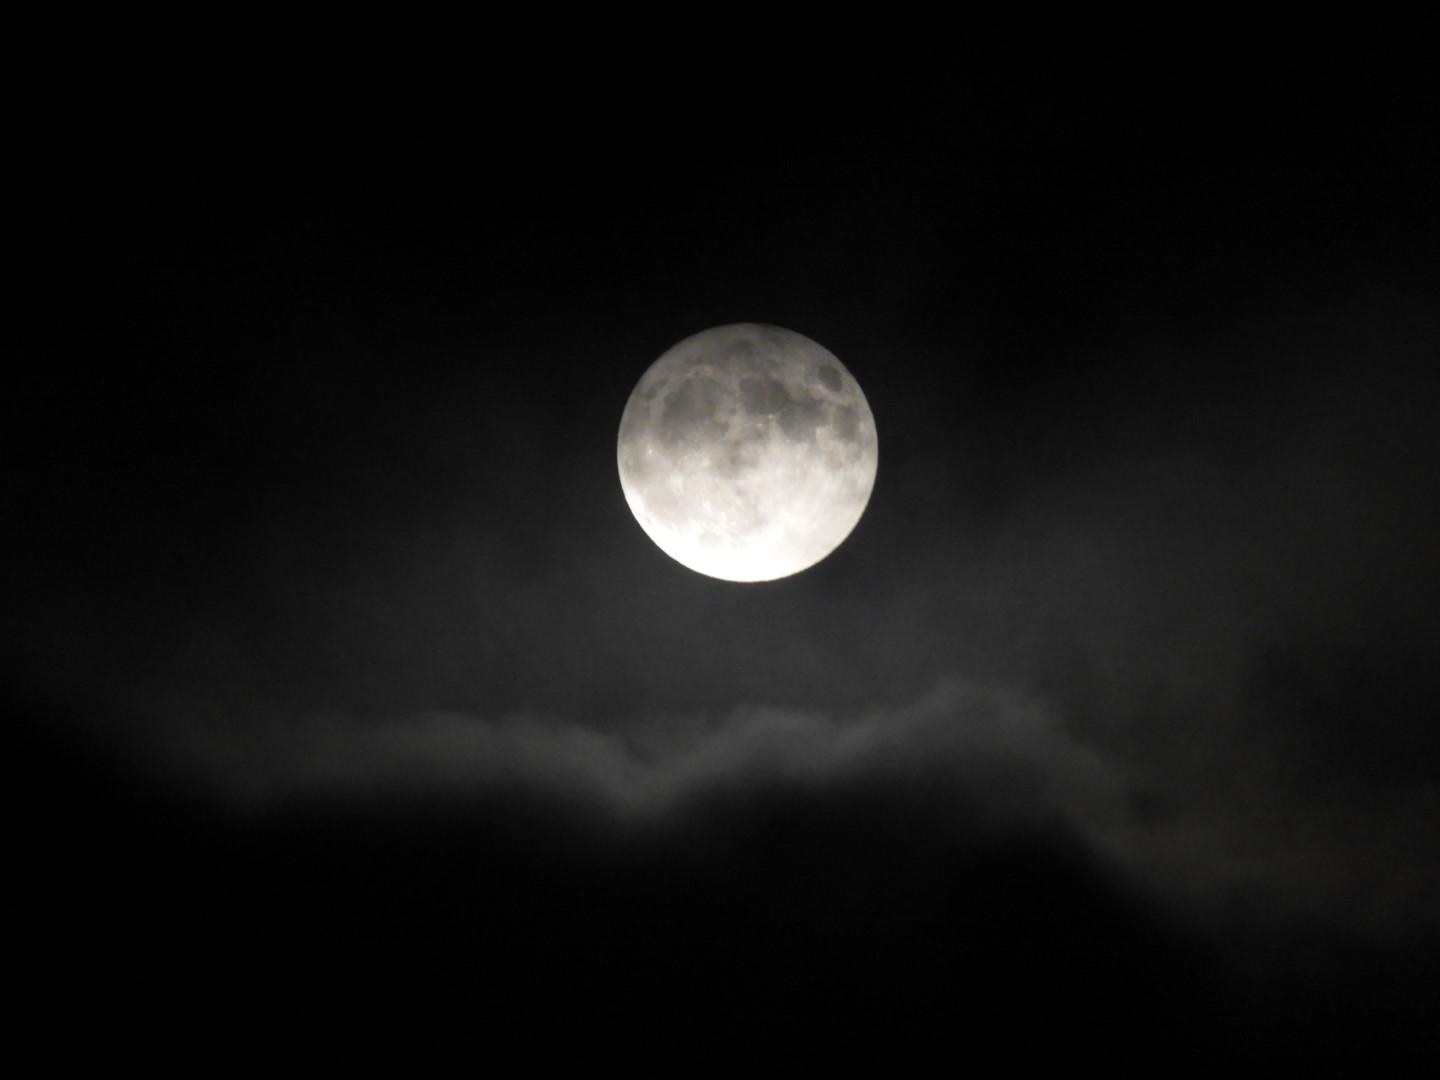 Simåne Karlsson i Ronneby tog den här bilden på månen.